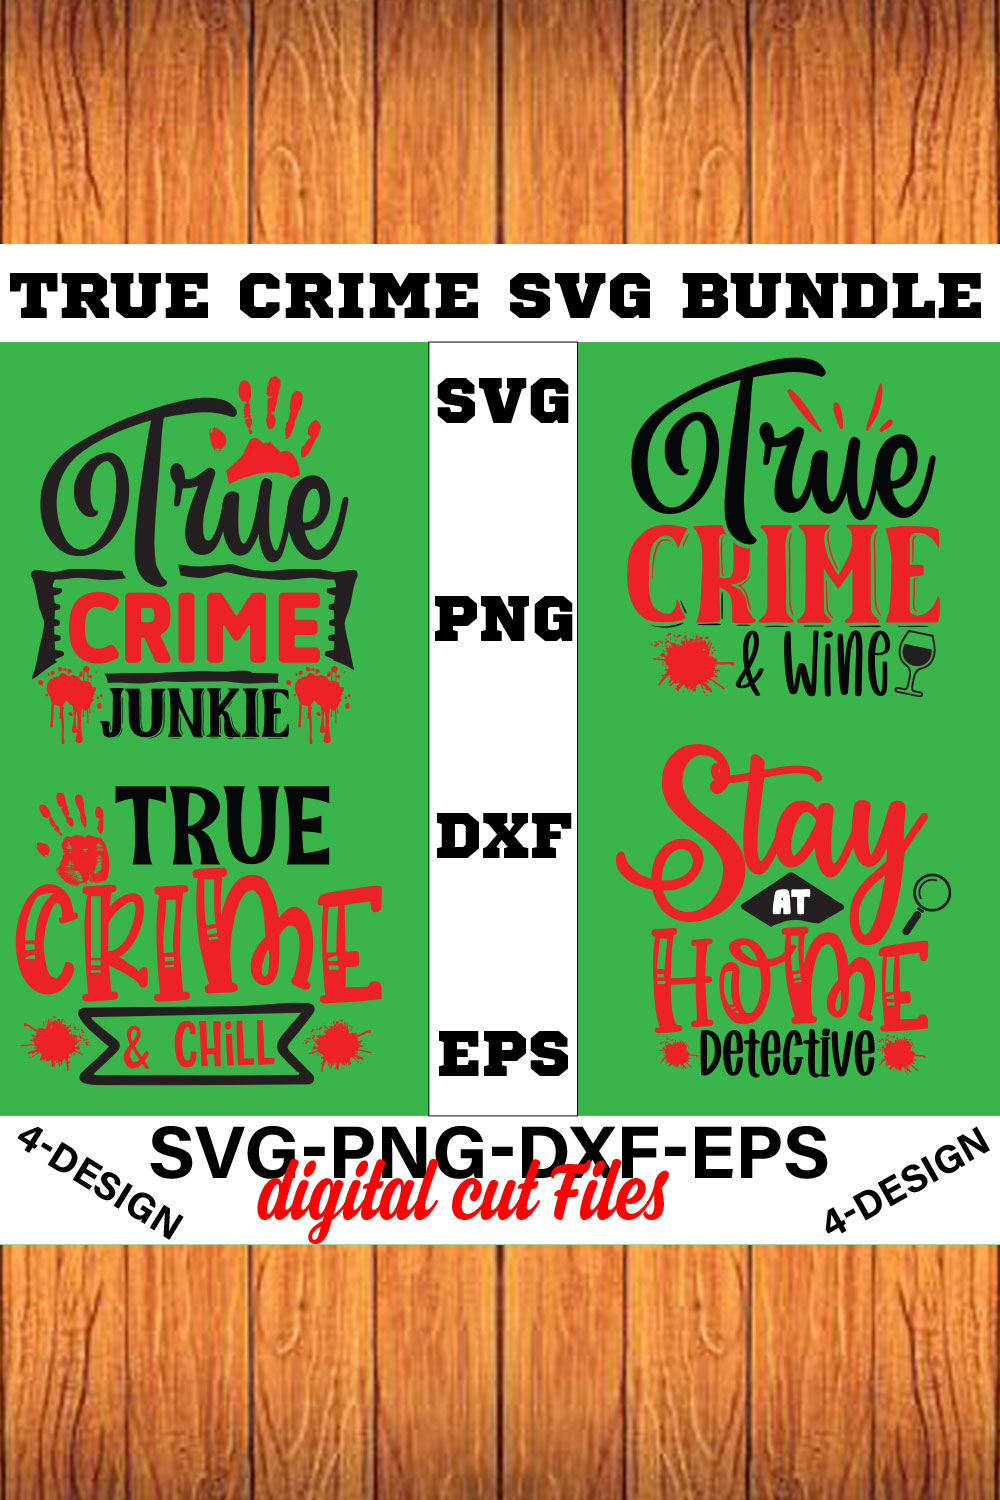 True Crime SVG Bundle Vol-02 pinterest preview image.